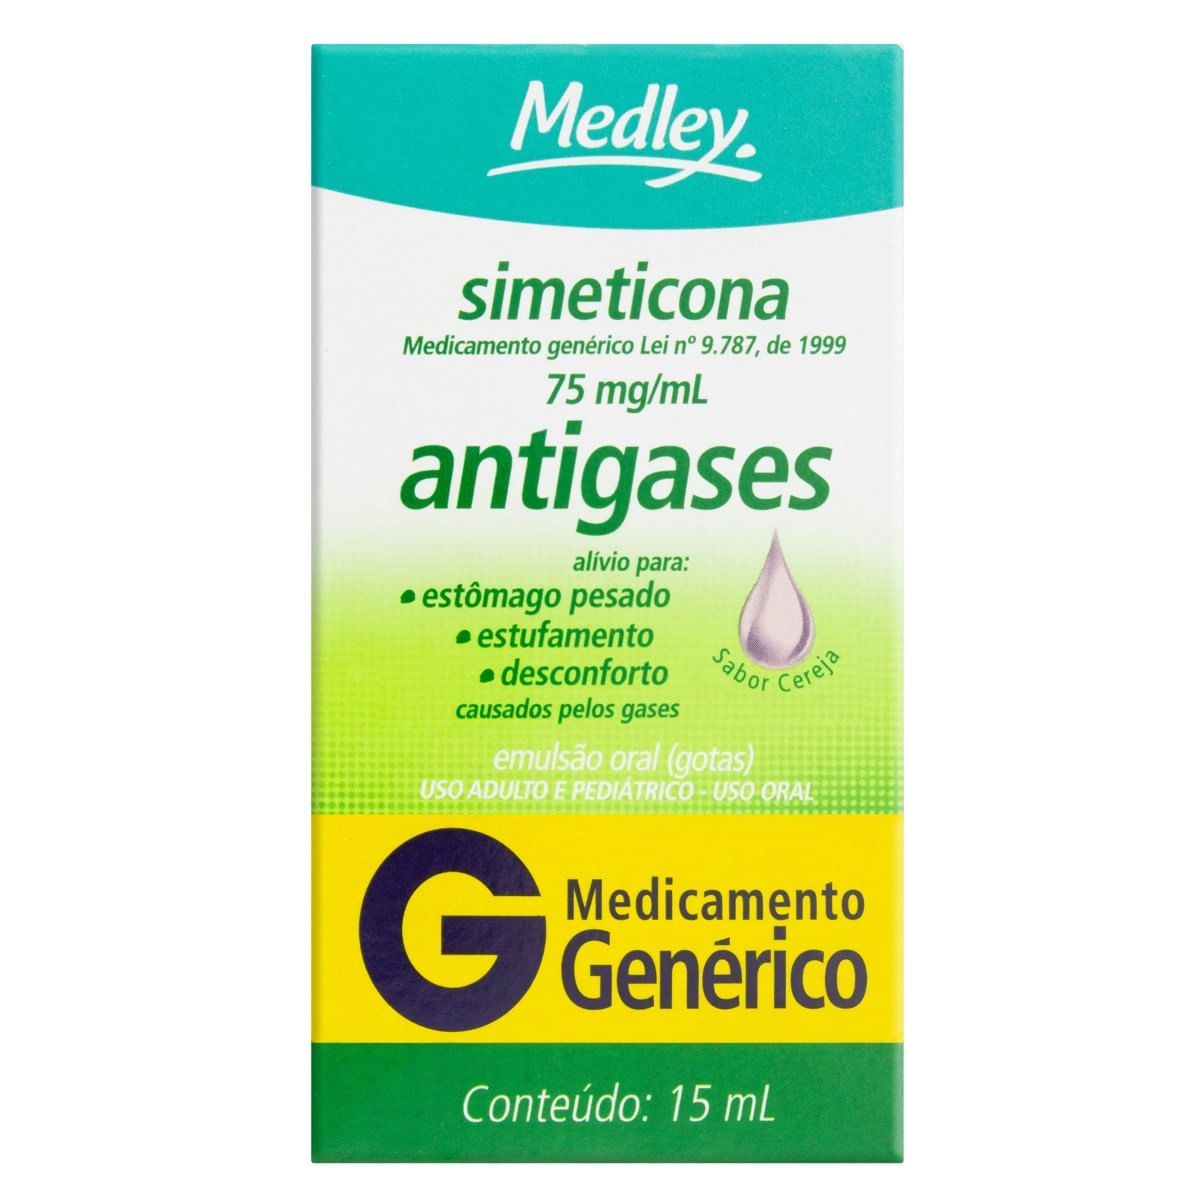 Simeticona-Sanofi-Medley-75mg-mL-caixa-com-1-frasco-gotejador-com-15mL-de-emulsao-de-uso-oral